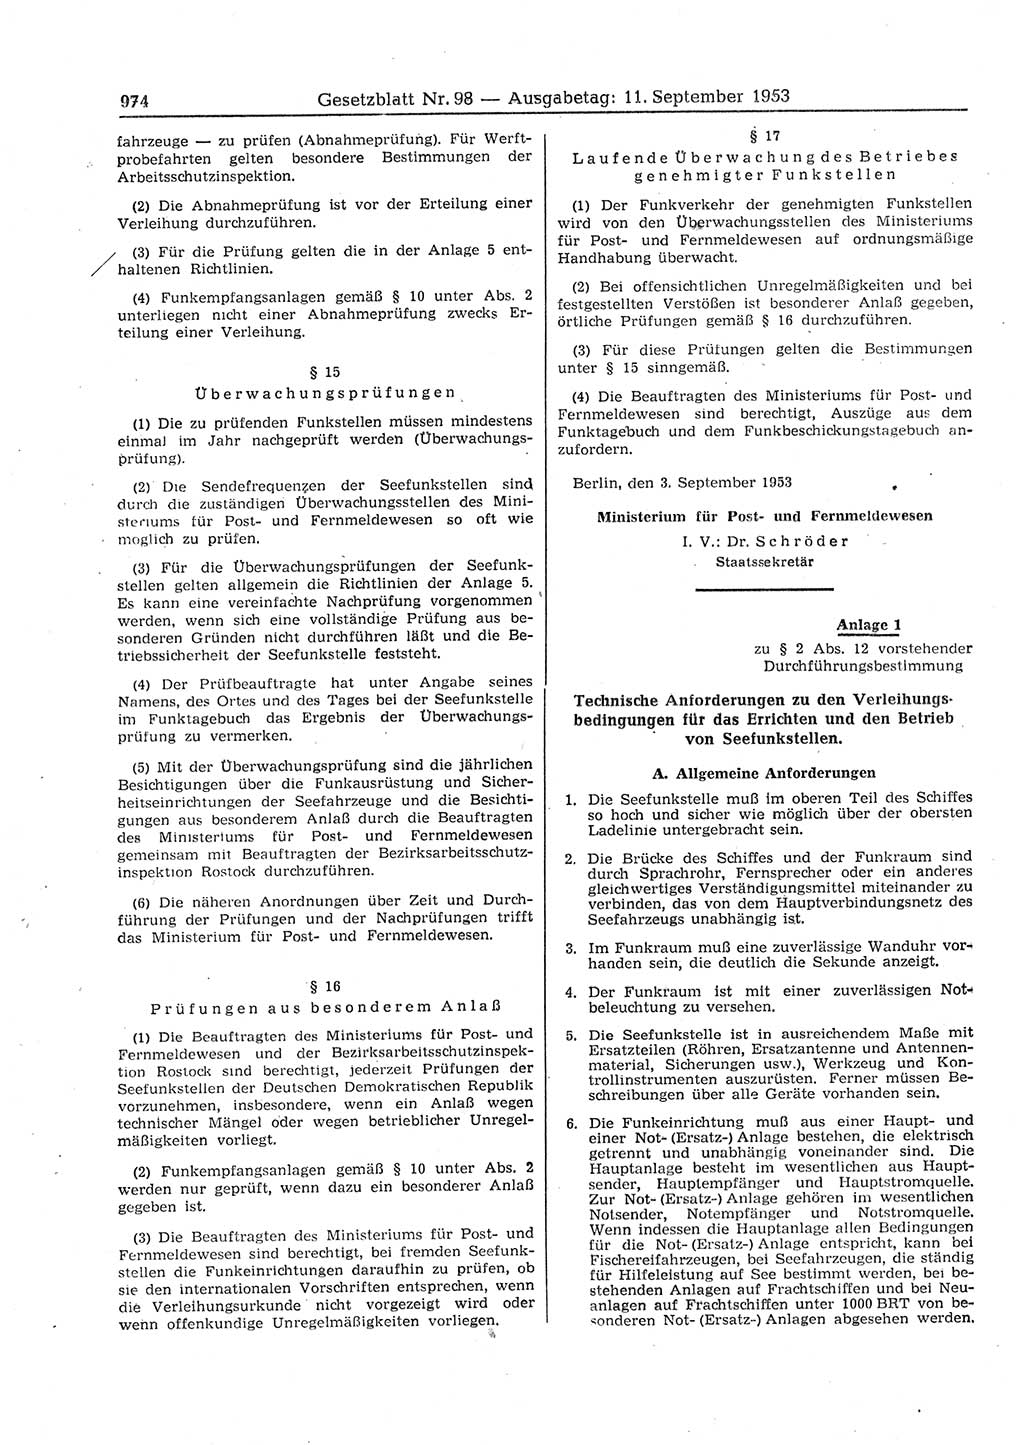 Gesetzblatt (GBl.) der Deutschen Demokratischen Republik (DDR) 1953, Seite 974 (GBl. DDR 1953, S. 974)